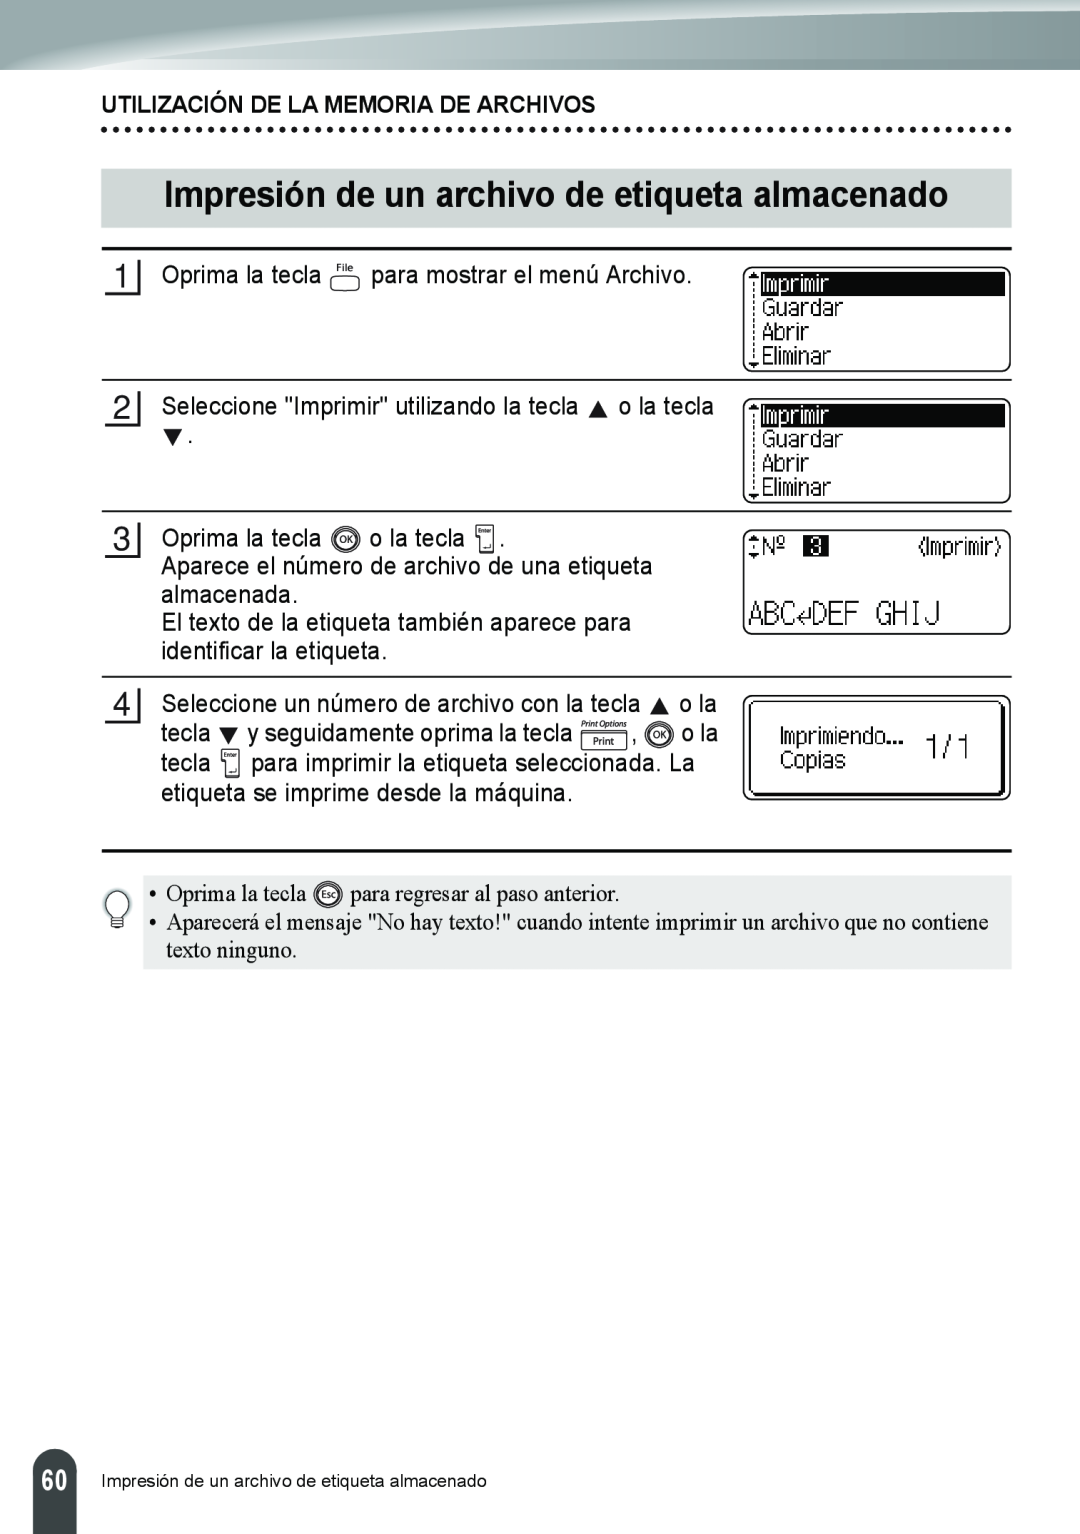 Brother PT-2110, PT-2100 manual Impresión de un archivo de etiqueta almacenado, Utilización De La Memoria De Archivos 